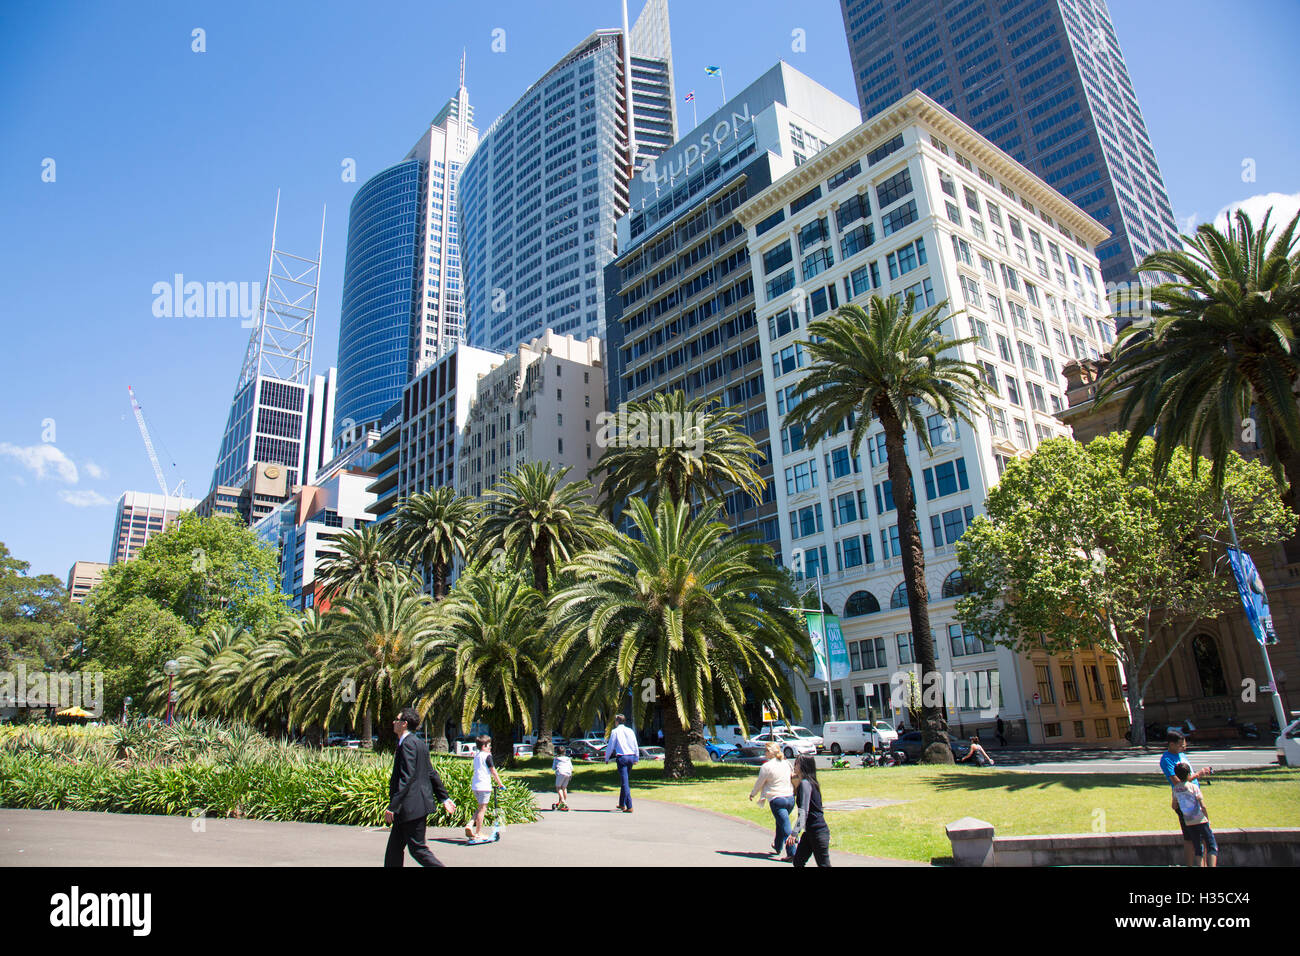 Le jardin botanique royal de Sydney et ses tours de bureaux en hauteur s'élèvent dans les gratte-ciel du quartier des affaires, Sydney, Australie Banque D'Images